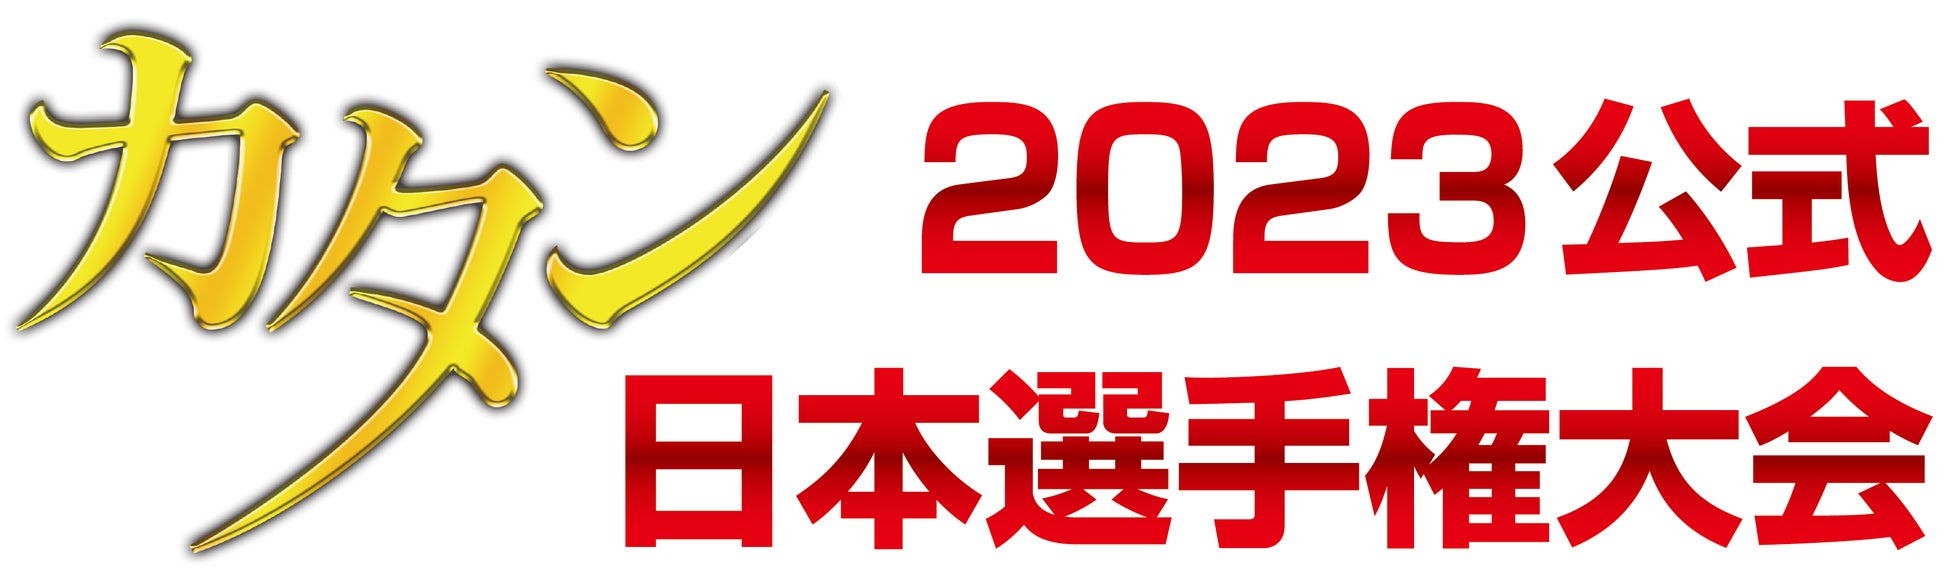 日本最大のボードゲーム選手権「カタン日本選手権大会」再スタート